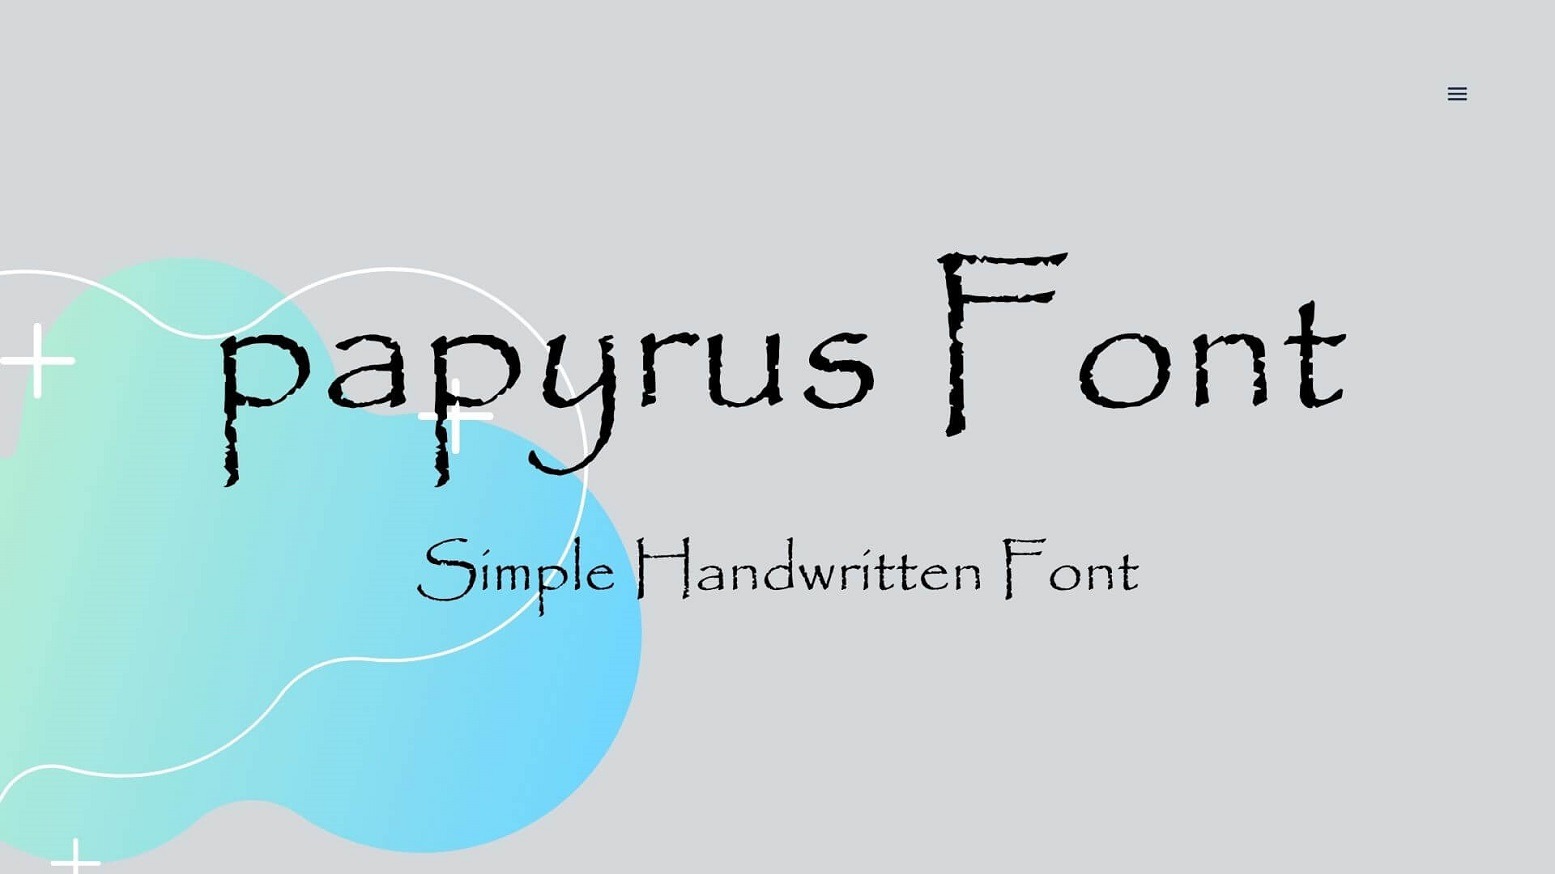 Download font chữ Papyrus miễn phí - Tại sao bạn lại phải trả tiền cho một font chữ khi bạn có thể tải về Papyrus miễn phí tại đây? Điều này đã được cập nhật, để bất kỳ ai trong số chúng ta đều có thể tận hưởng và sáng tạo sản phẩm cá nhân của mình. Tải font chữ Papyrus ngay hôm nay để có trình bày tuyệt vời.